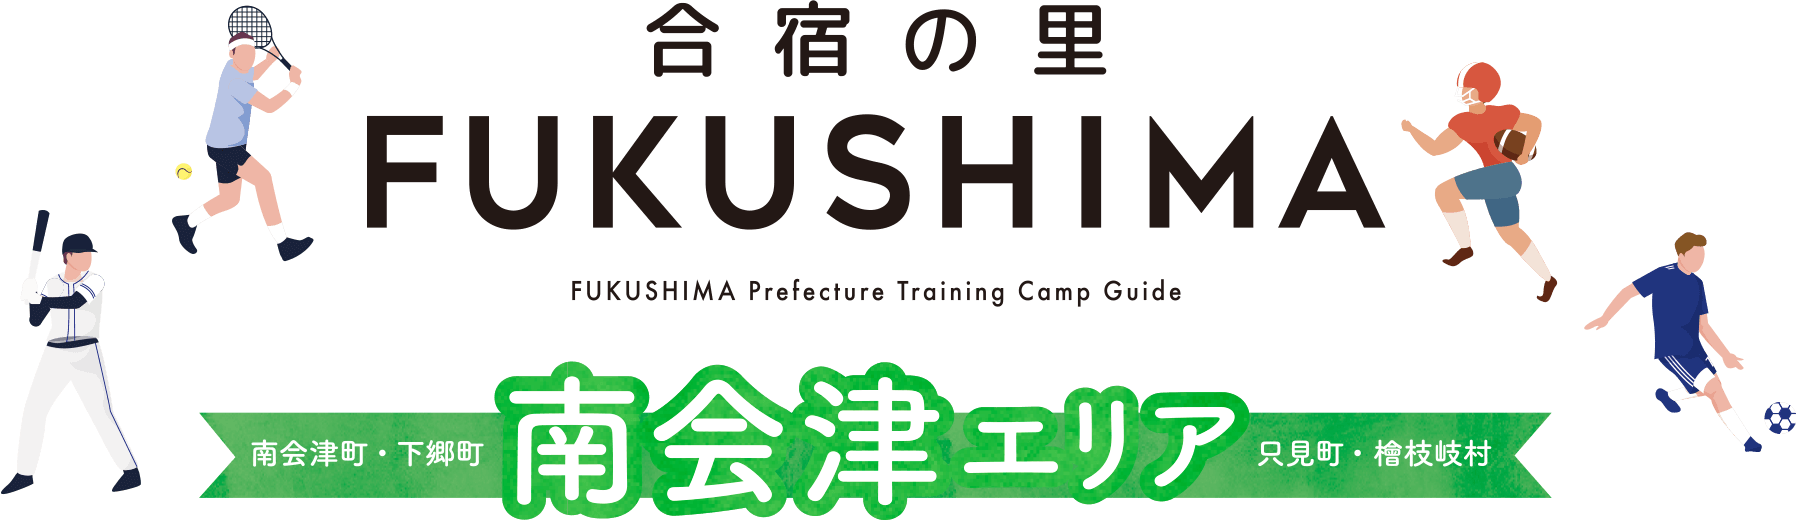 合宿の里FUKUSHIMA FUKUSHIMA Prefecture Traning Camp Guide